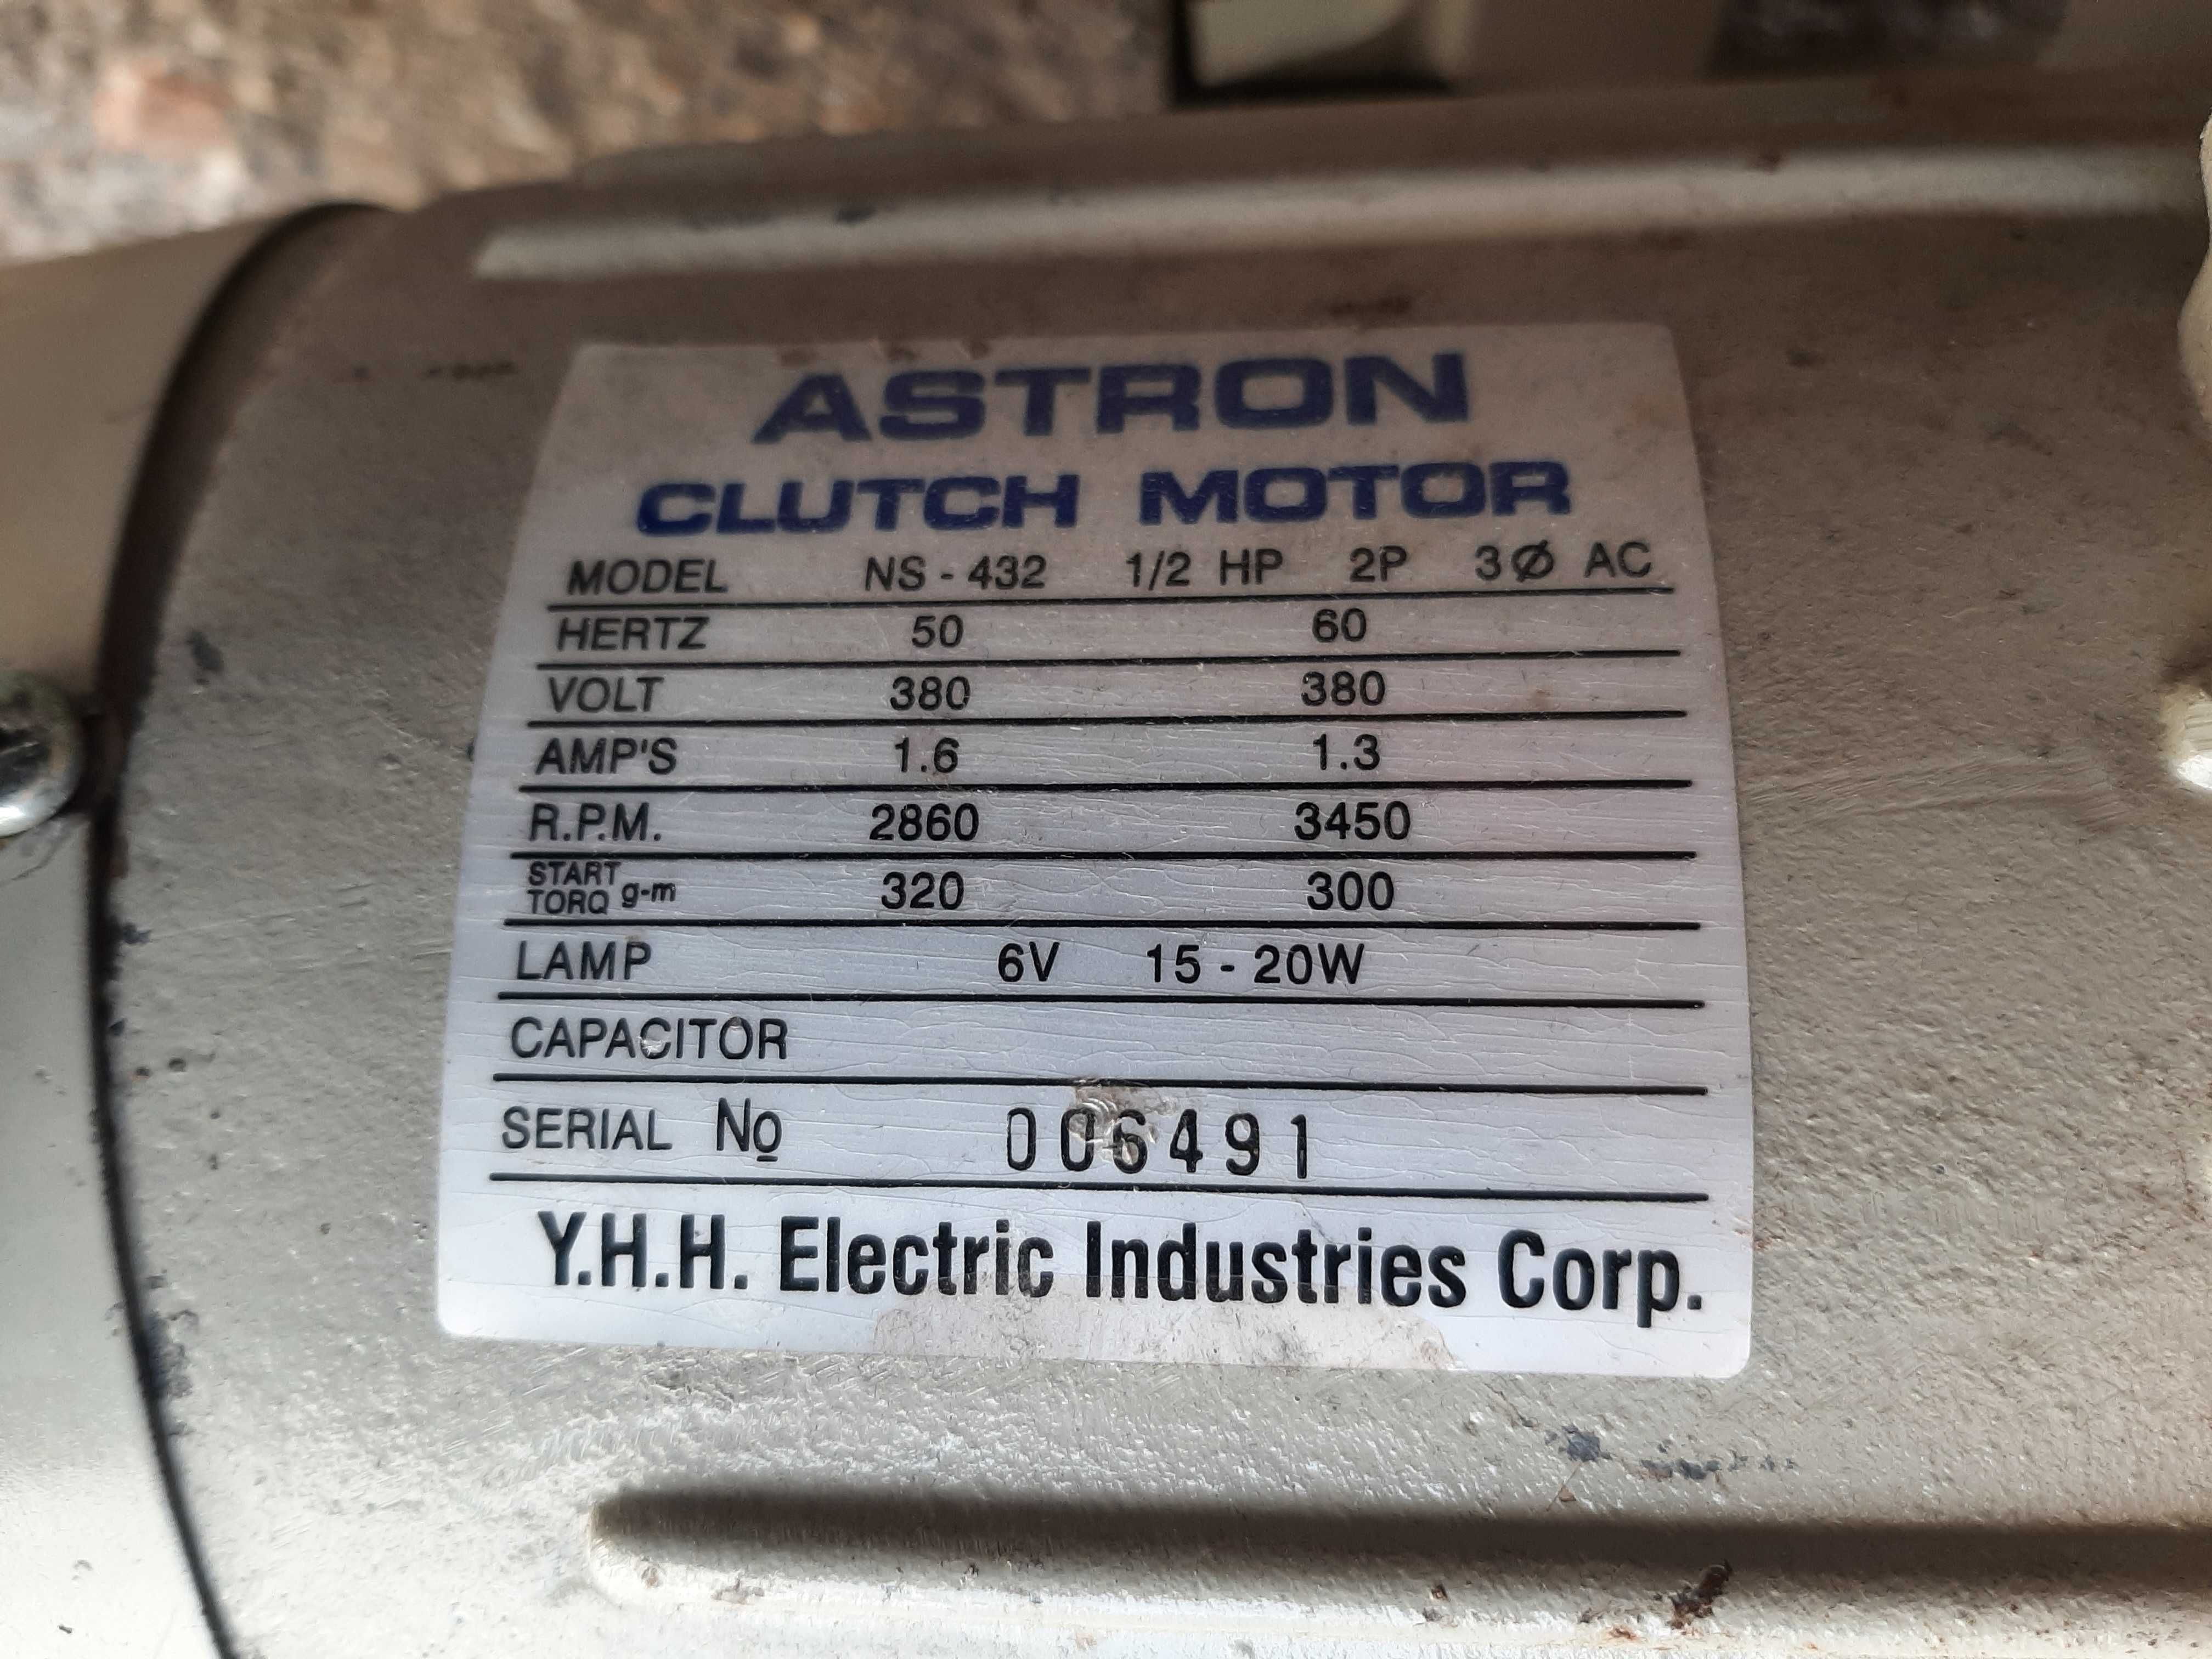 Мотор для швейных машин ASTRON clutch motor ns-432